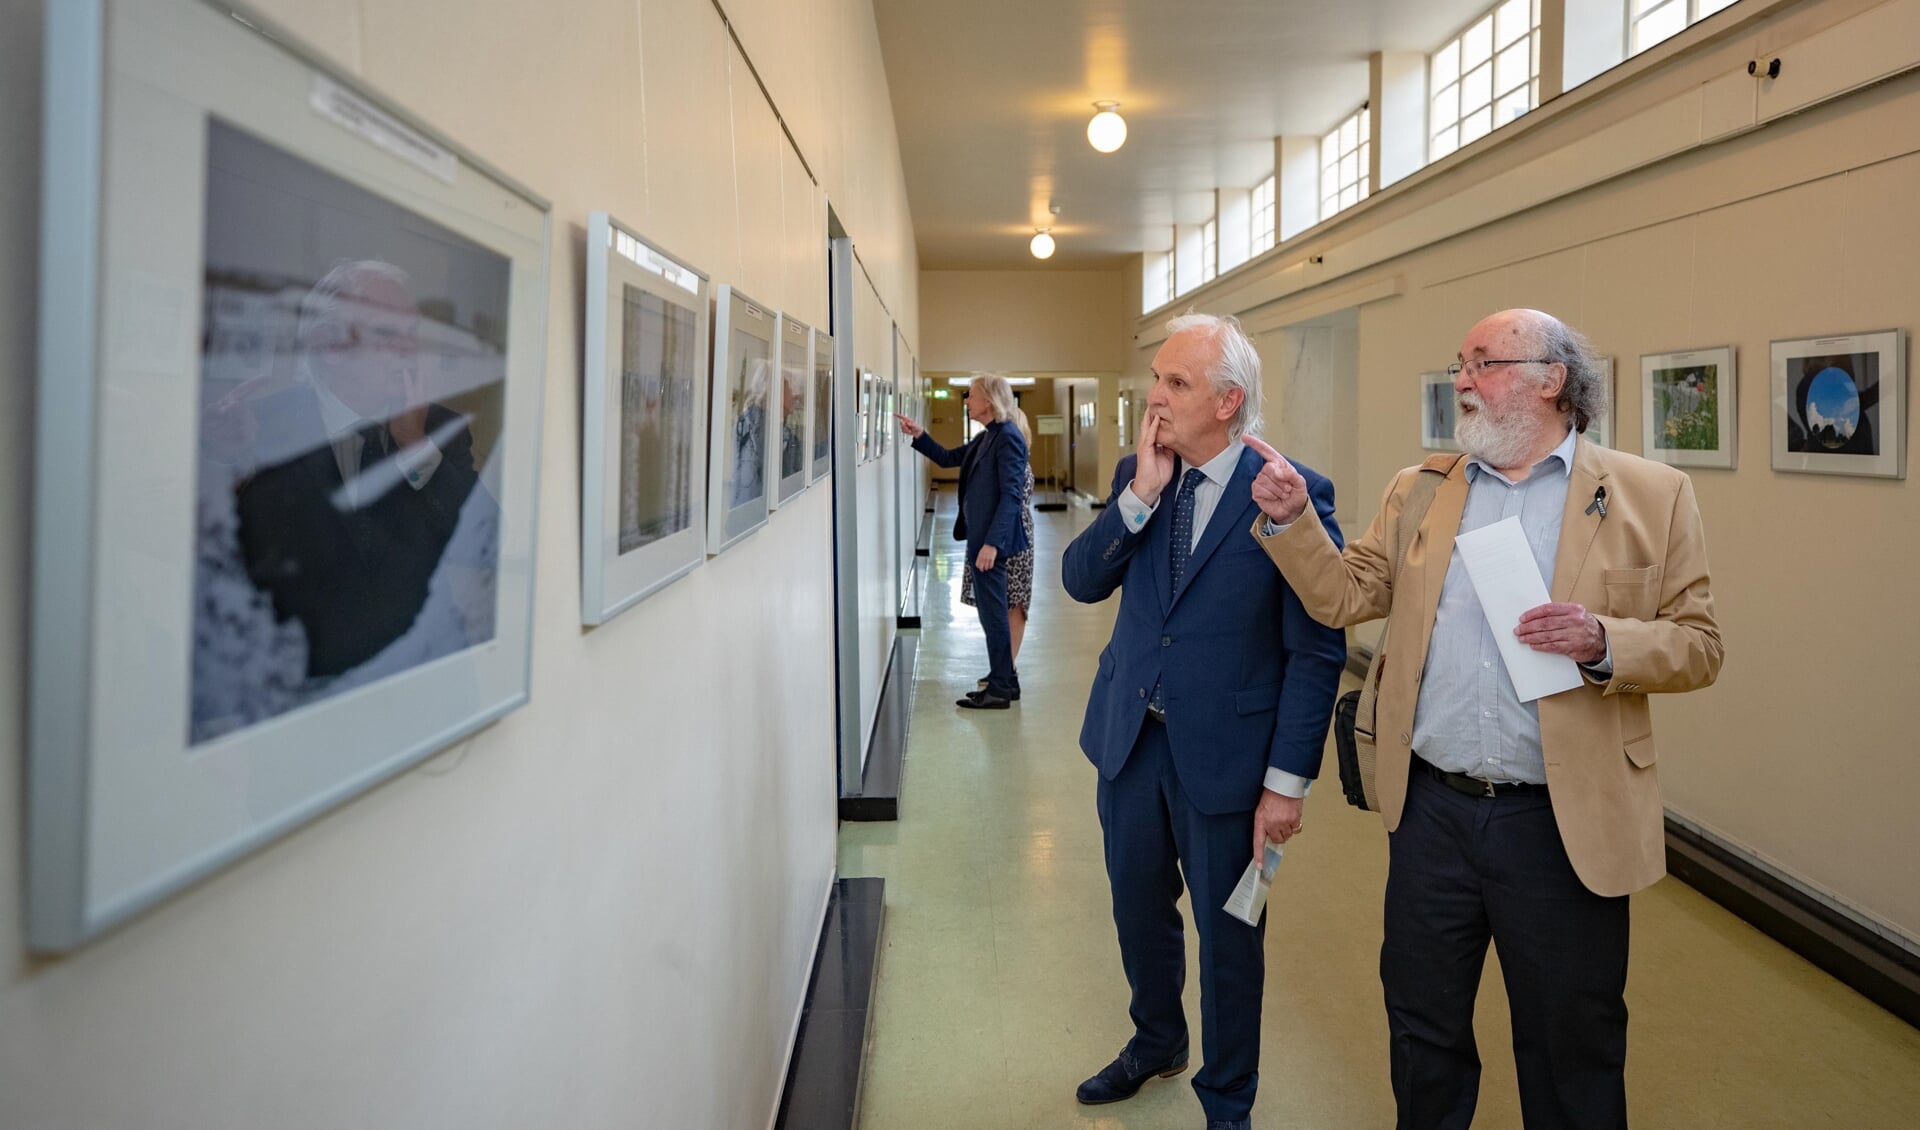 Burgemeester Pieter Broertjes bekijkt samen met Philip P. Kruijer de foto's. 